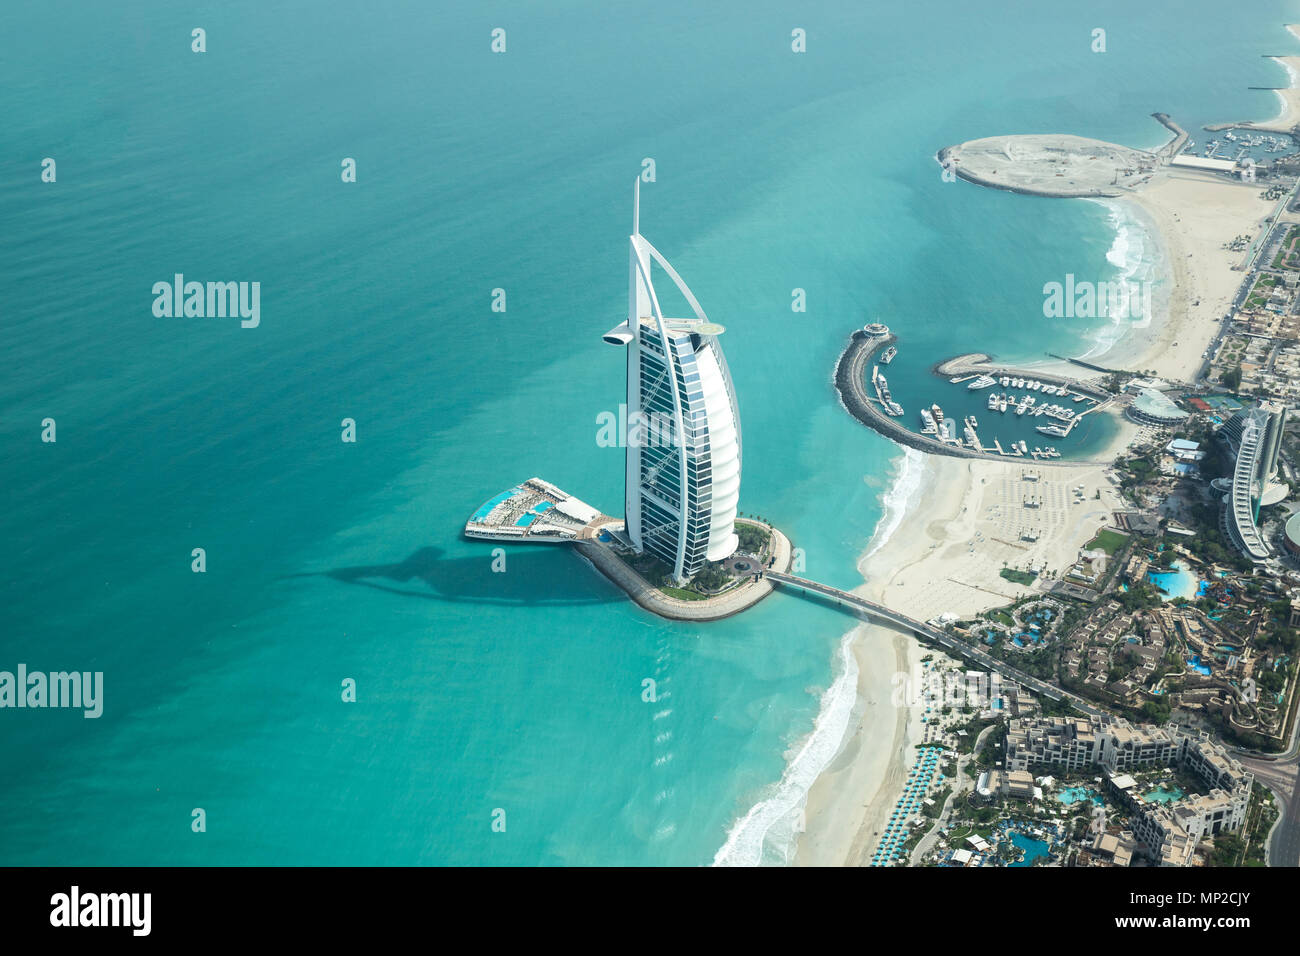 Dubai, Emirati Arabi Uniti - 18 Maggio 2018: vista aerea del Burj Al Arab Hotel di lusso sulla costa del golfo persico in una limpida giornata di sole. Foto Stock